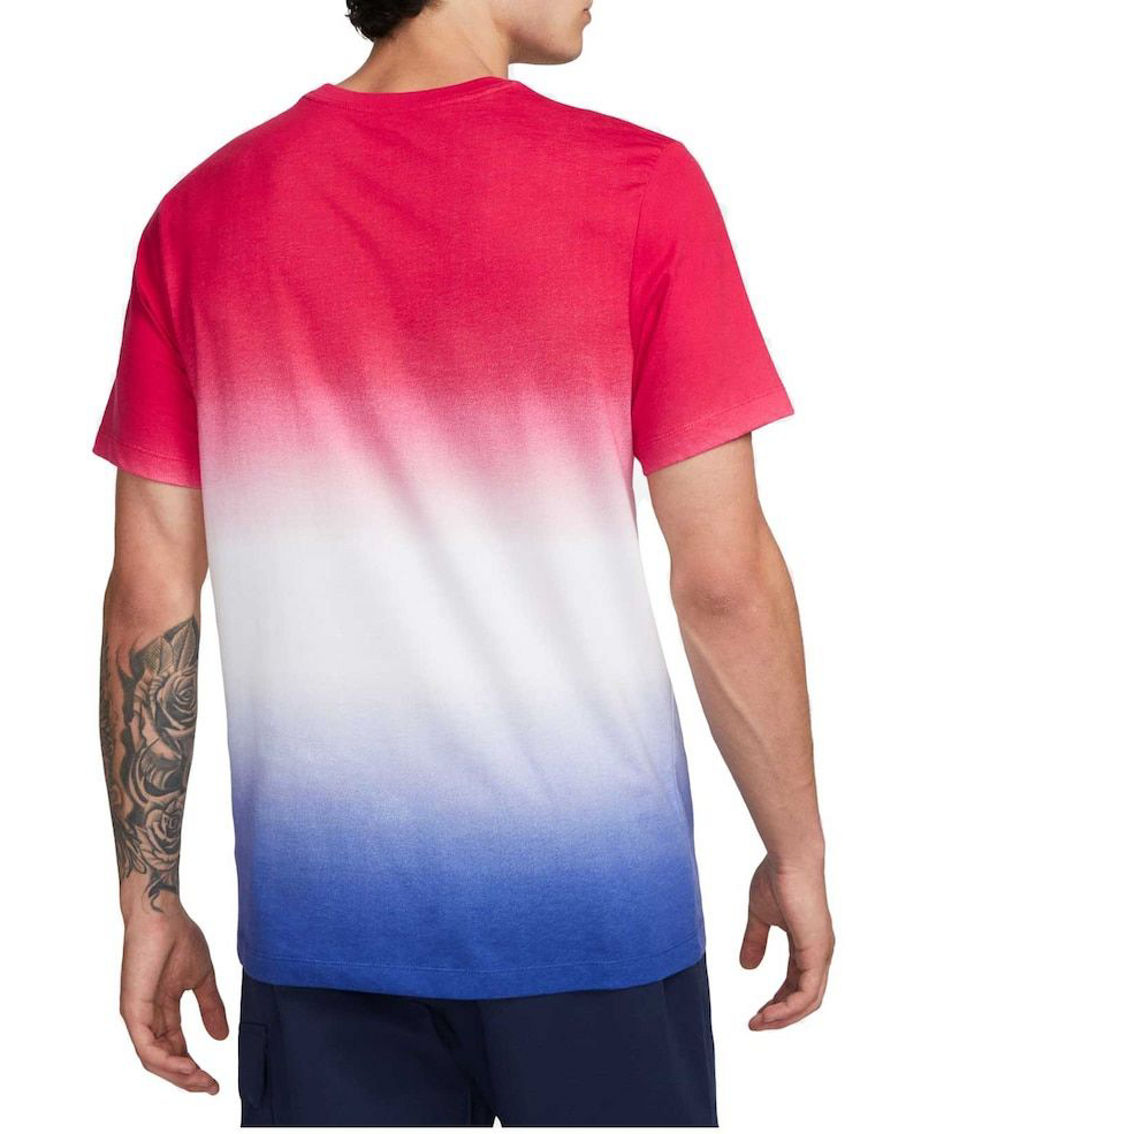 Nike Men's White Barcelona Crest T-Shirt - Image 3 of 4